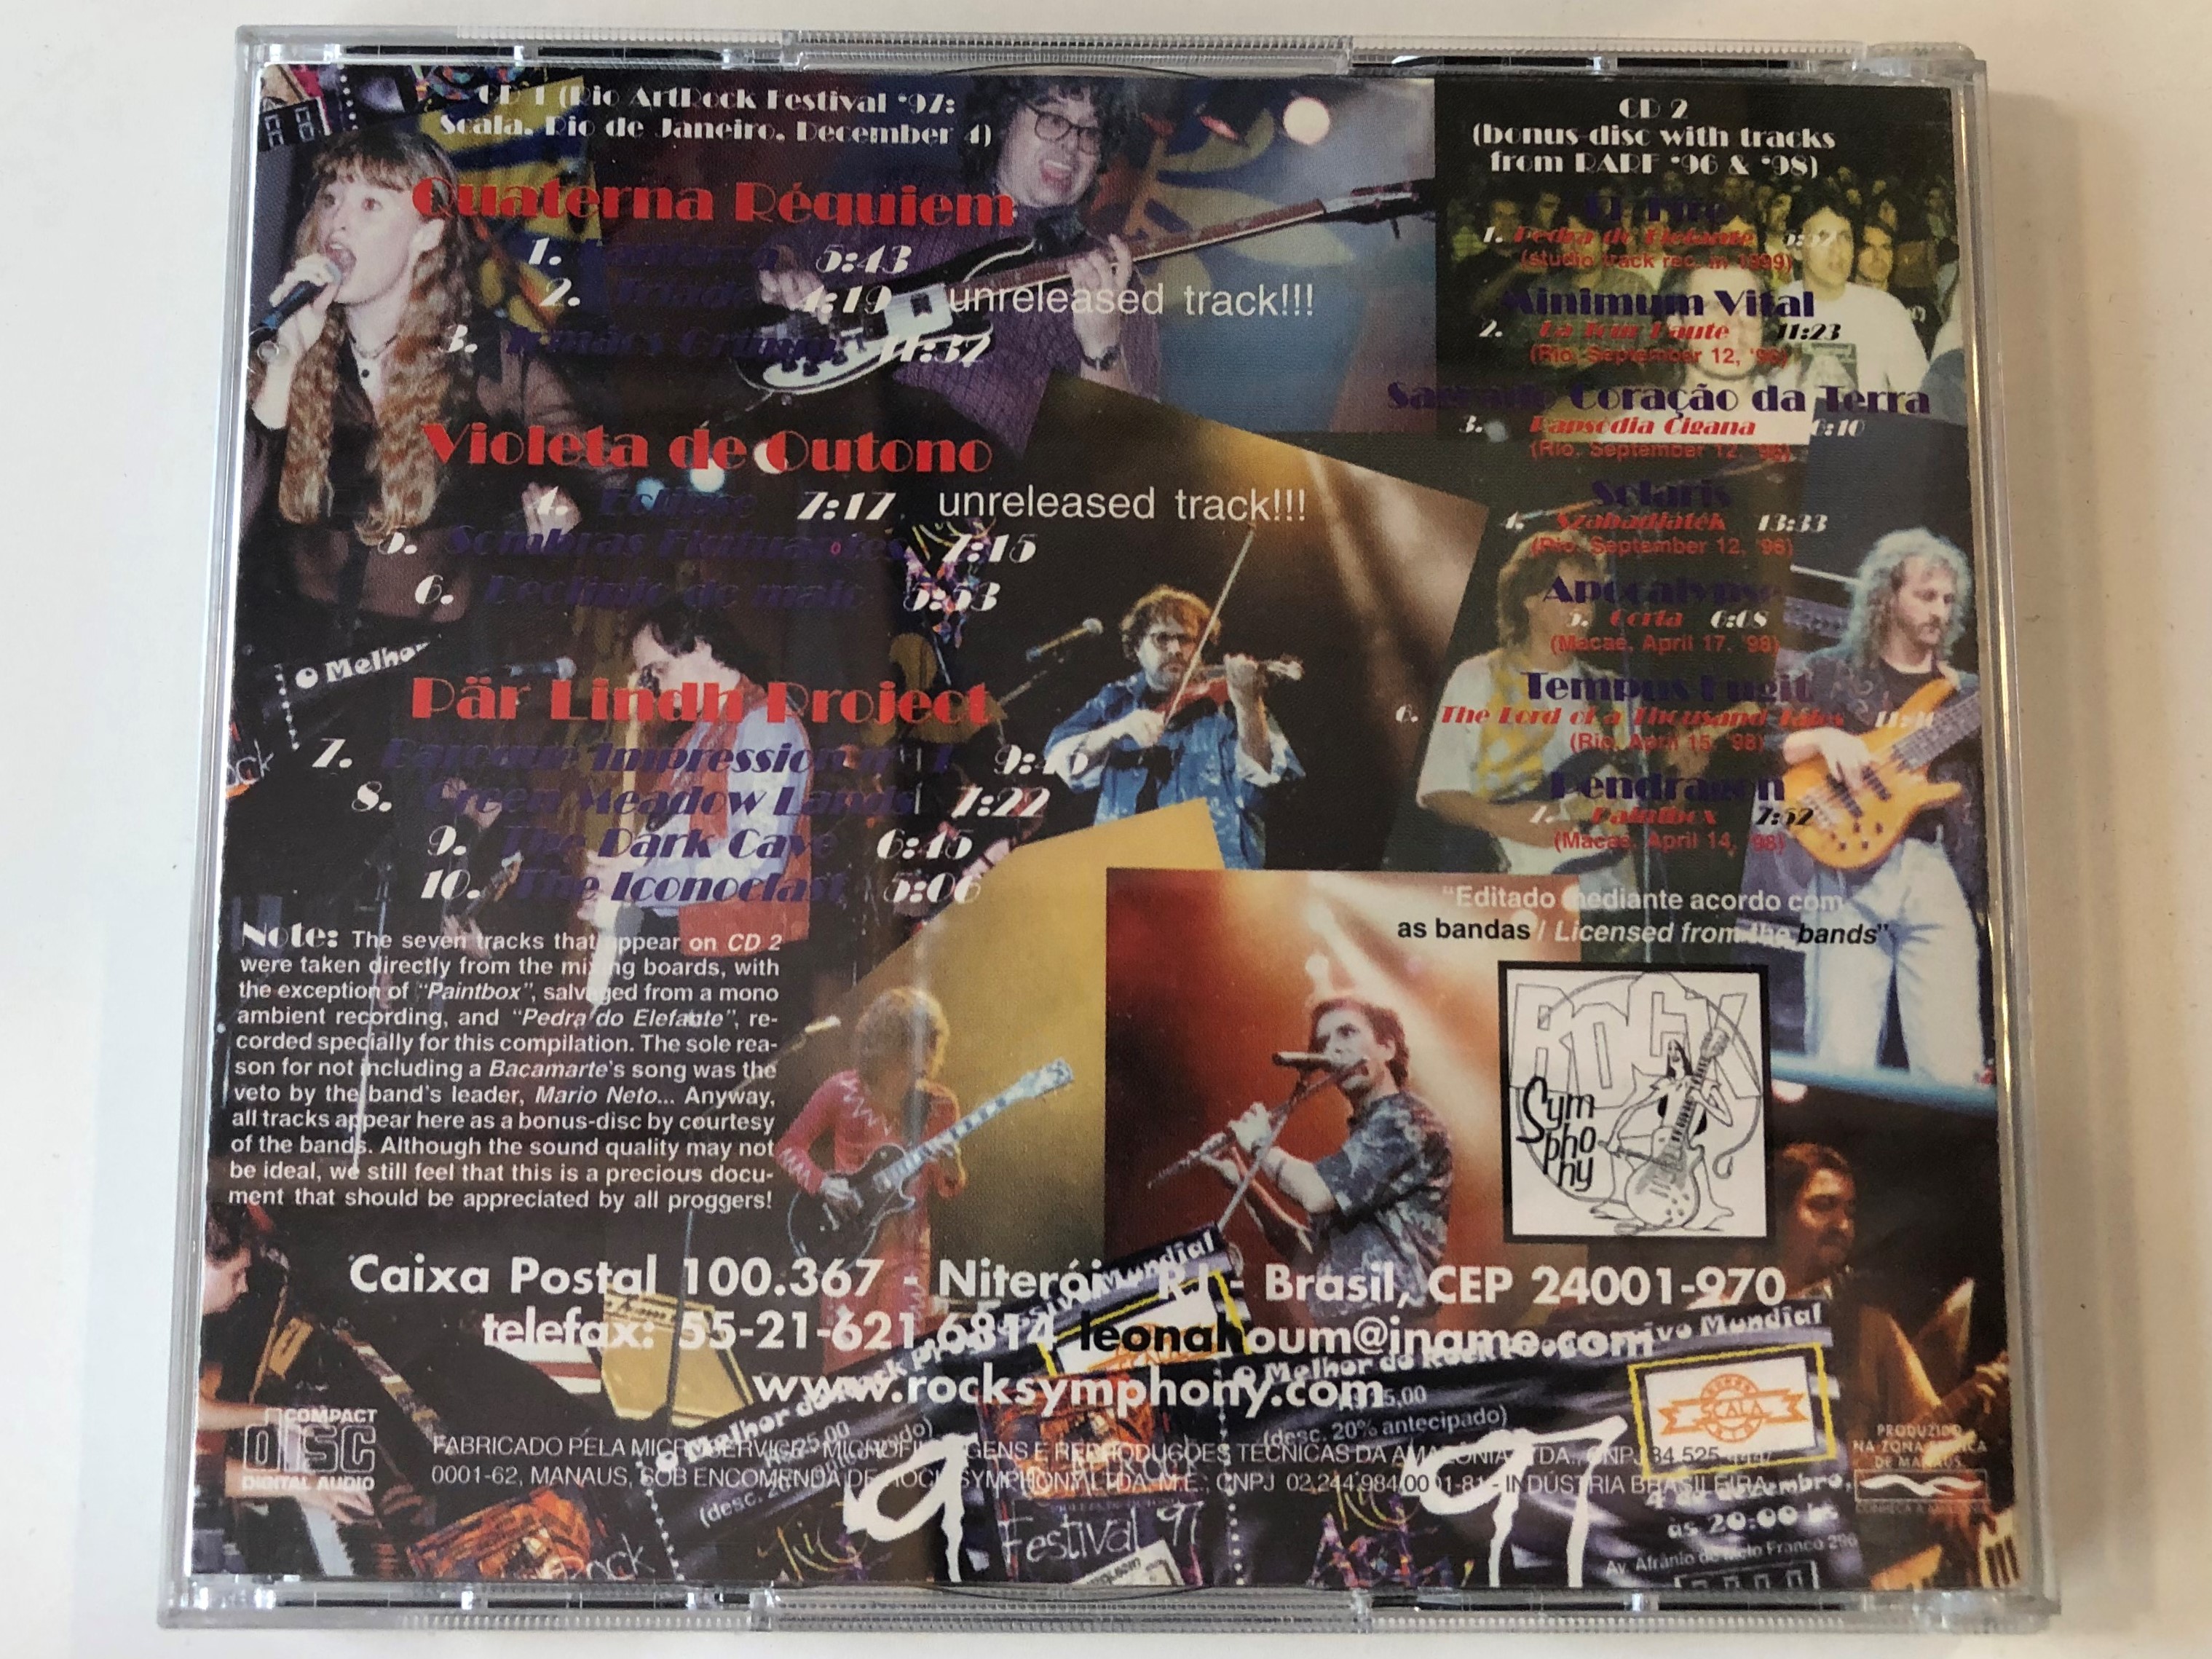 rio-art-rock-festival-97-p-r-lindh-project-violeta-de-outono-quaterna-r-quiem-rock-symphony-2x-audio-cd-2-.jpg